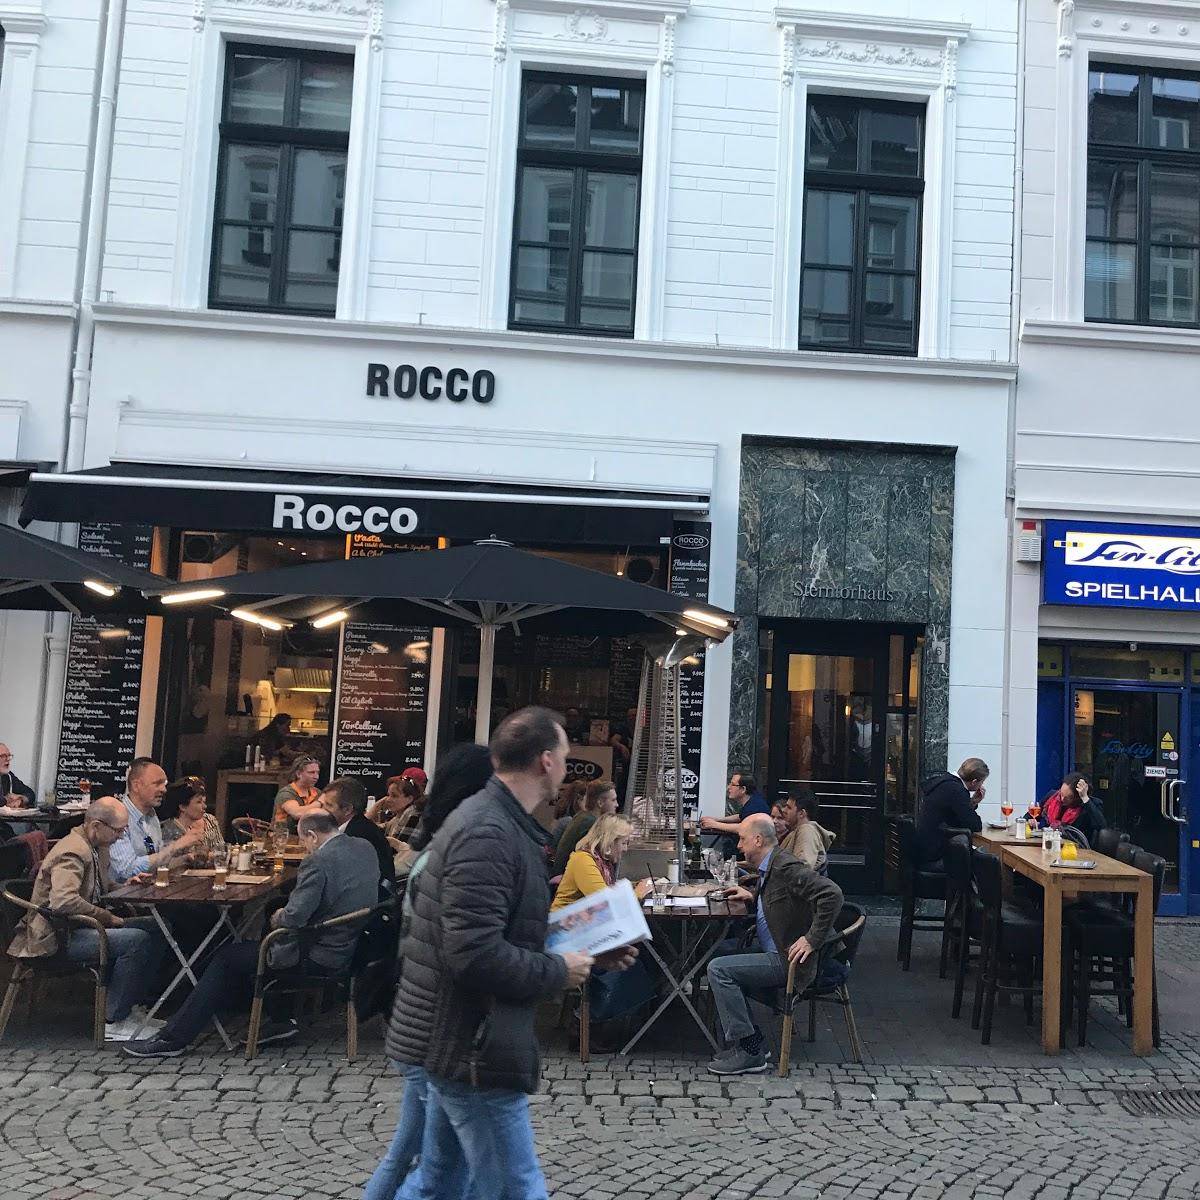 Restaurant "Rocco" in Bonn